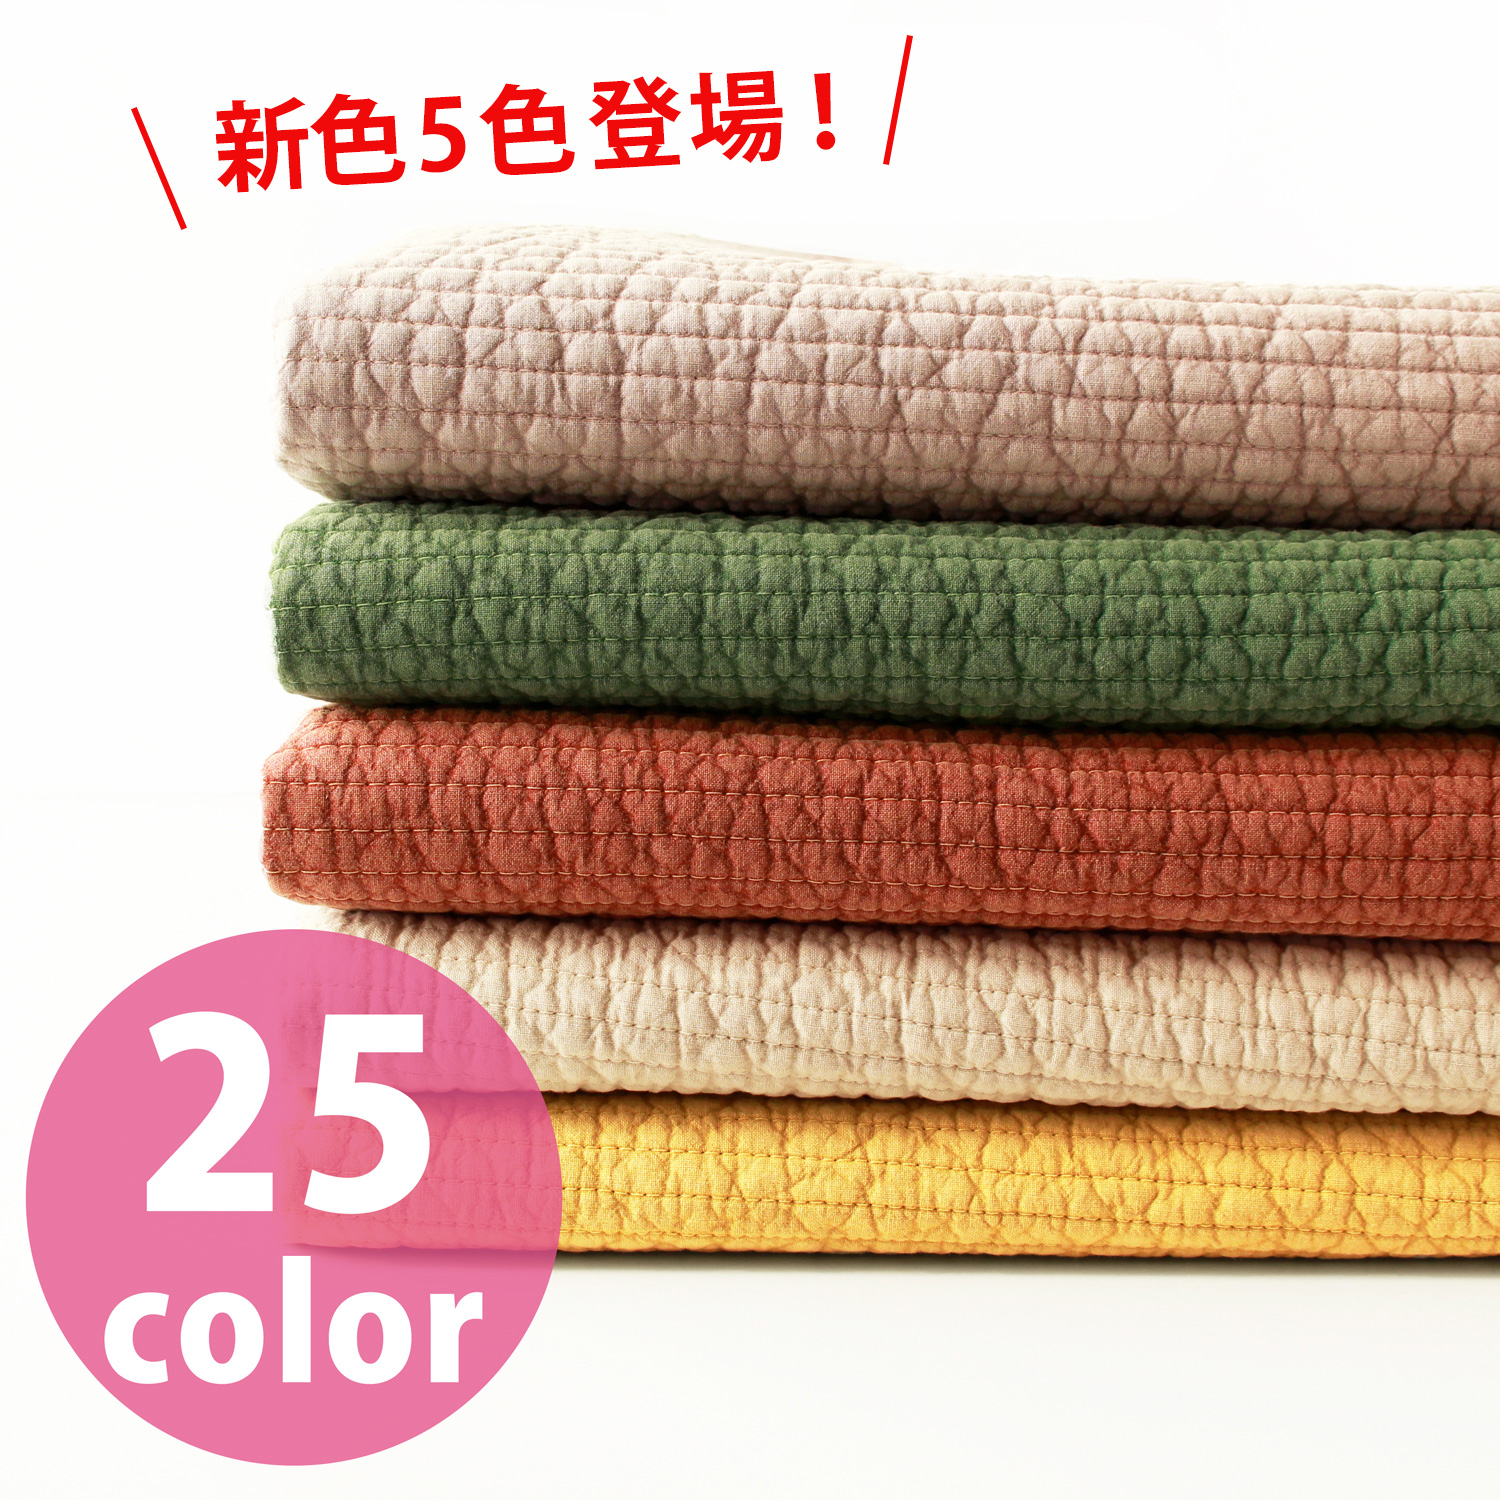 ■NBY307R nubi ヌビ 韓国伝統キルティング生地 巾7mm 約8m巻 (巻)